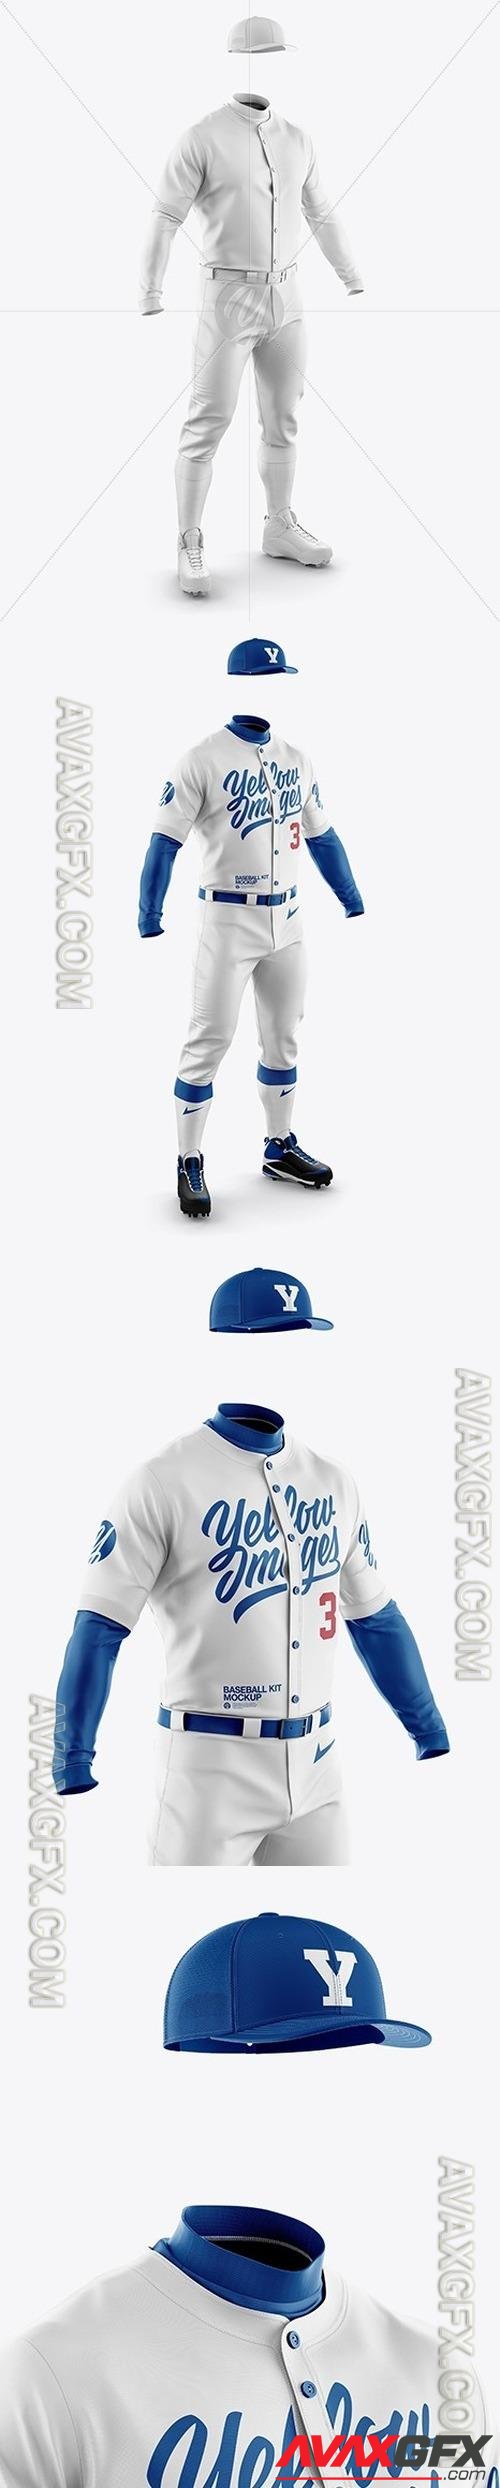 Men’s Full Baseball Kit Mockup - Half Side View 23727